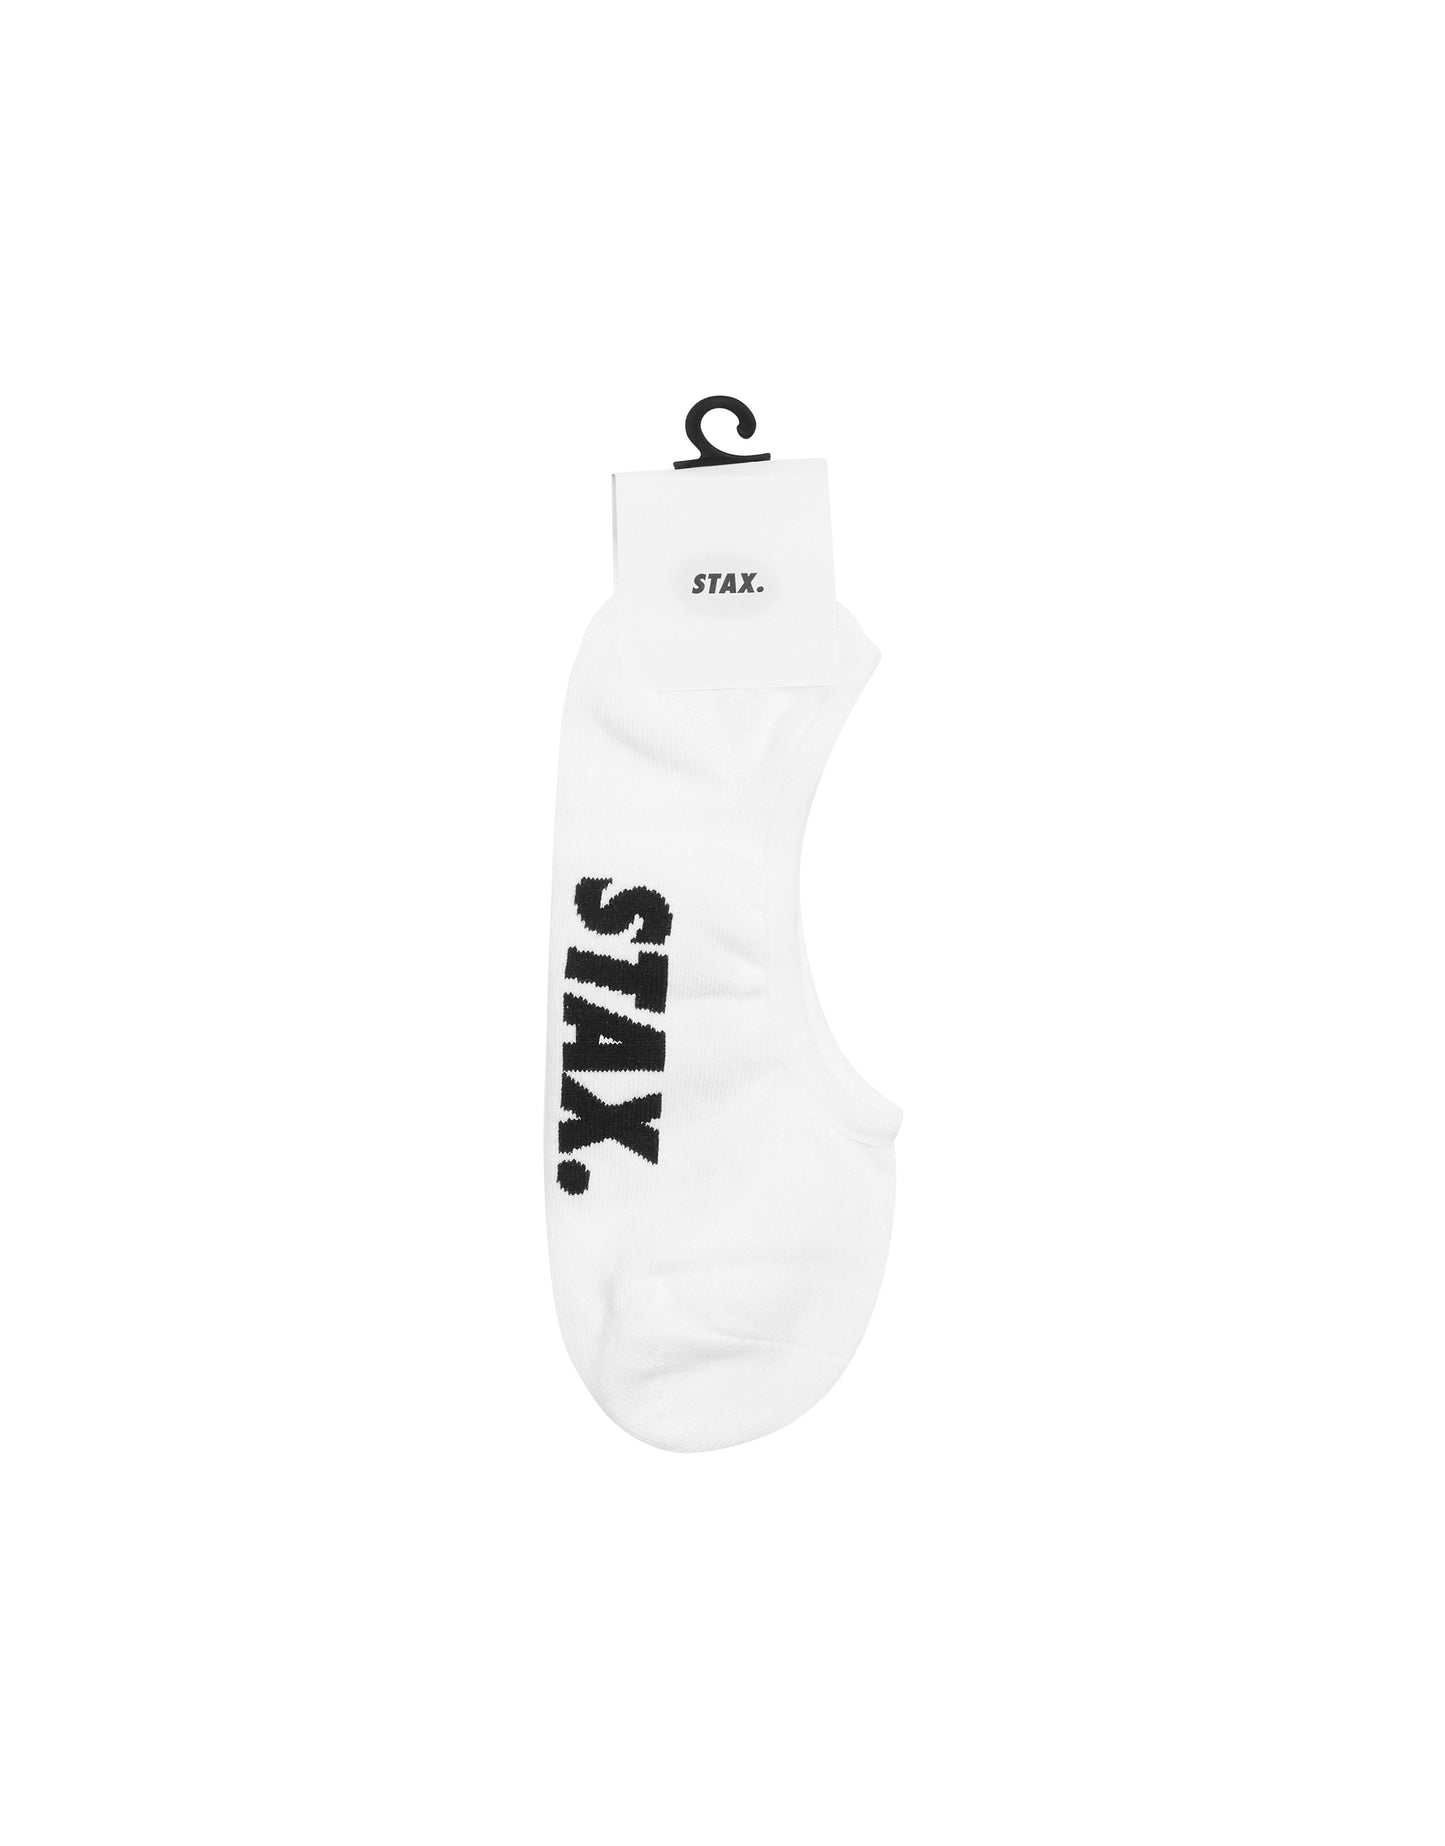 Unisex No Show Socks - White